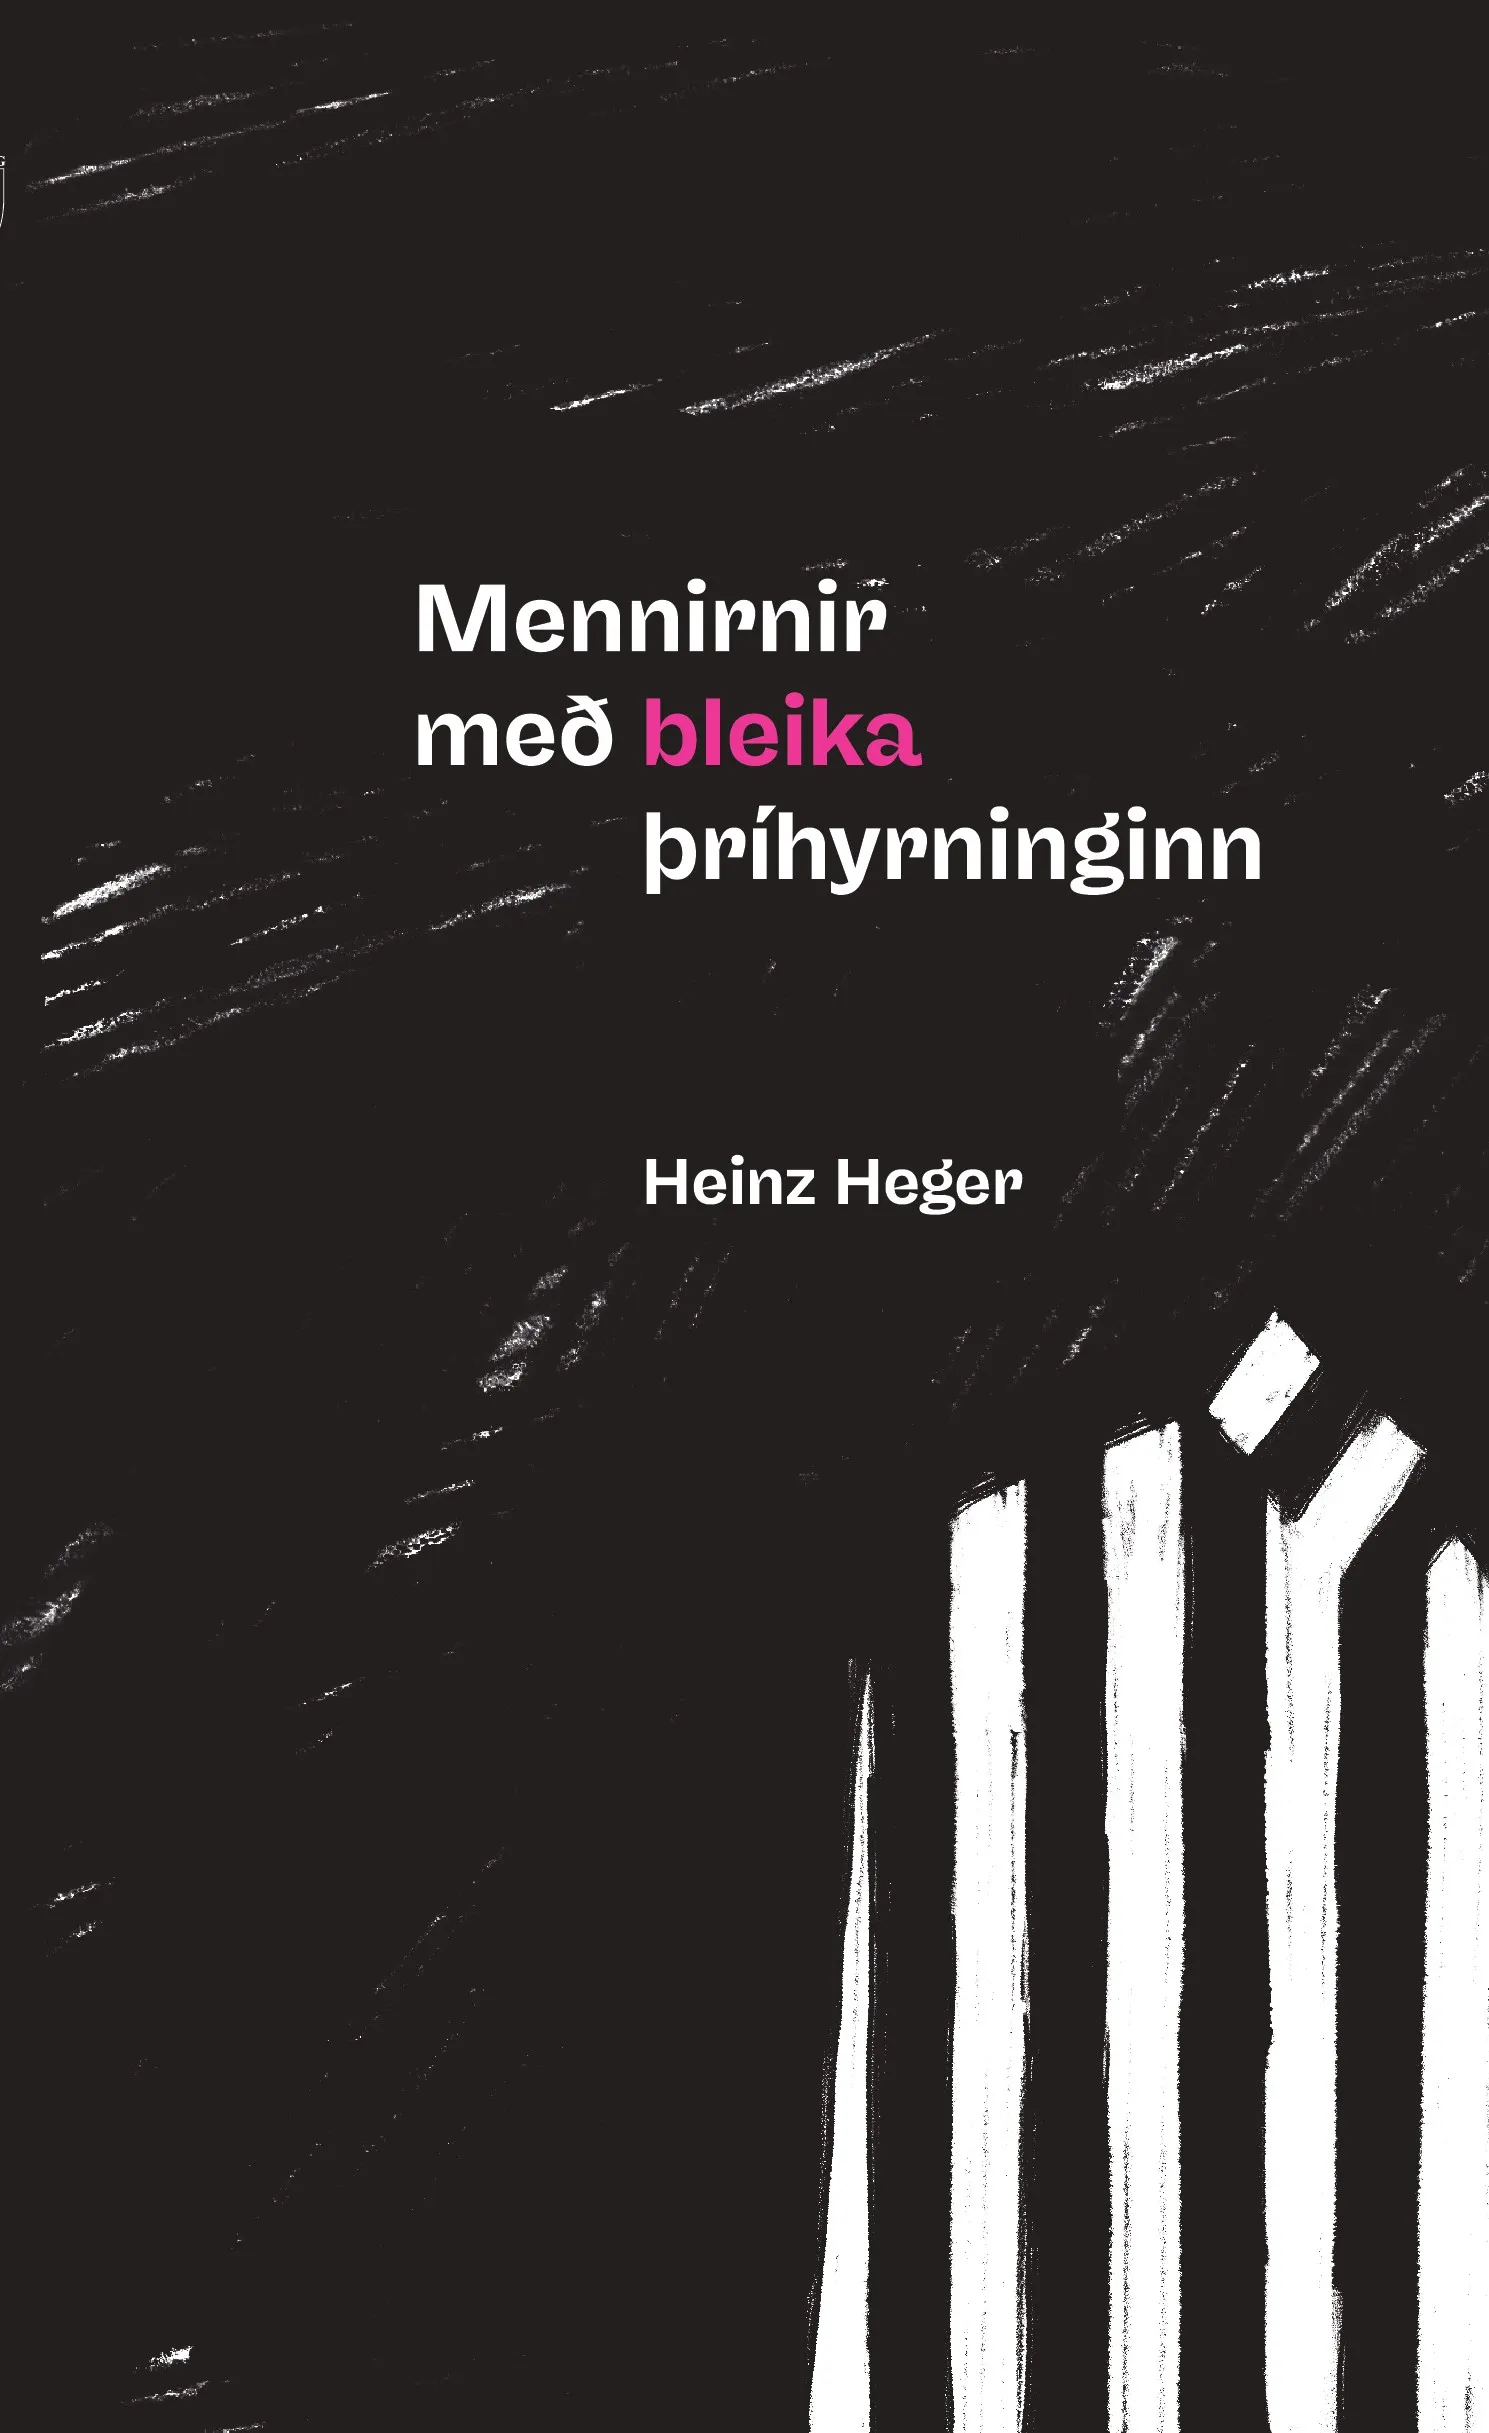 Bókakápa: Mennirnir með bleika þríhyrninginn Frásögn homma af vist sinni í fangabúðum nasista á árunum 1939-1945